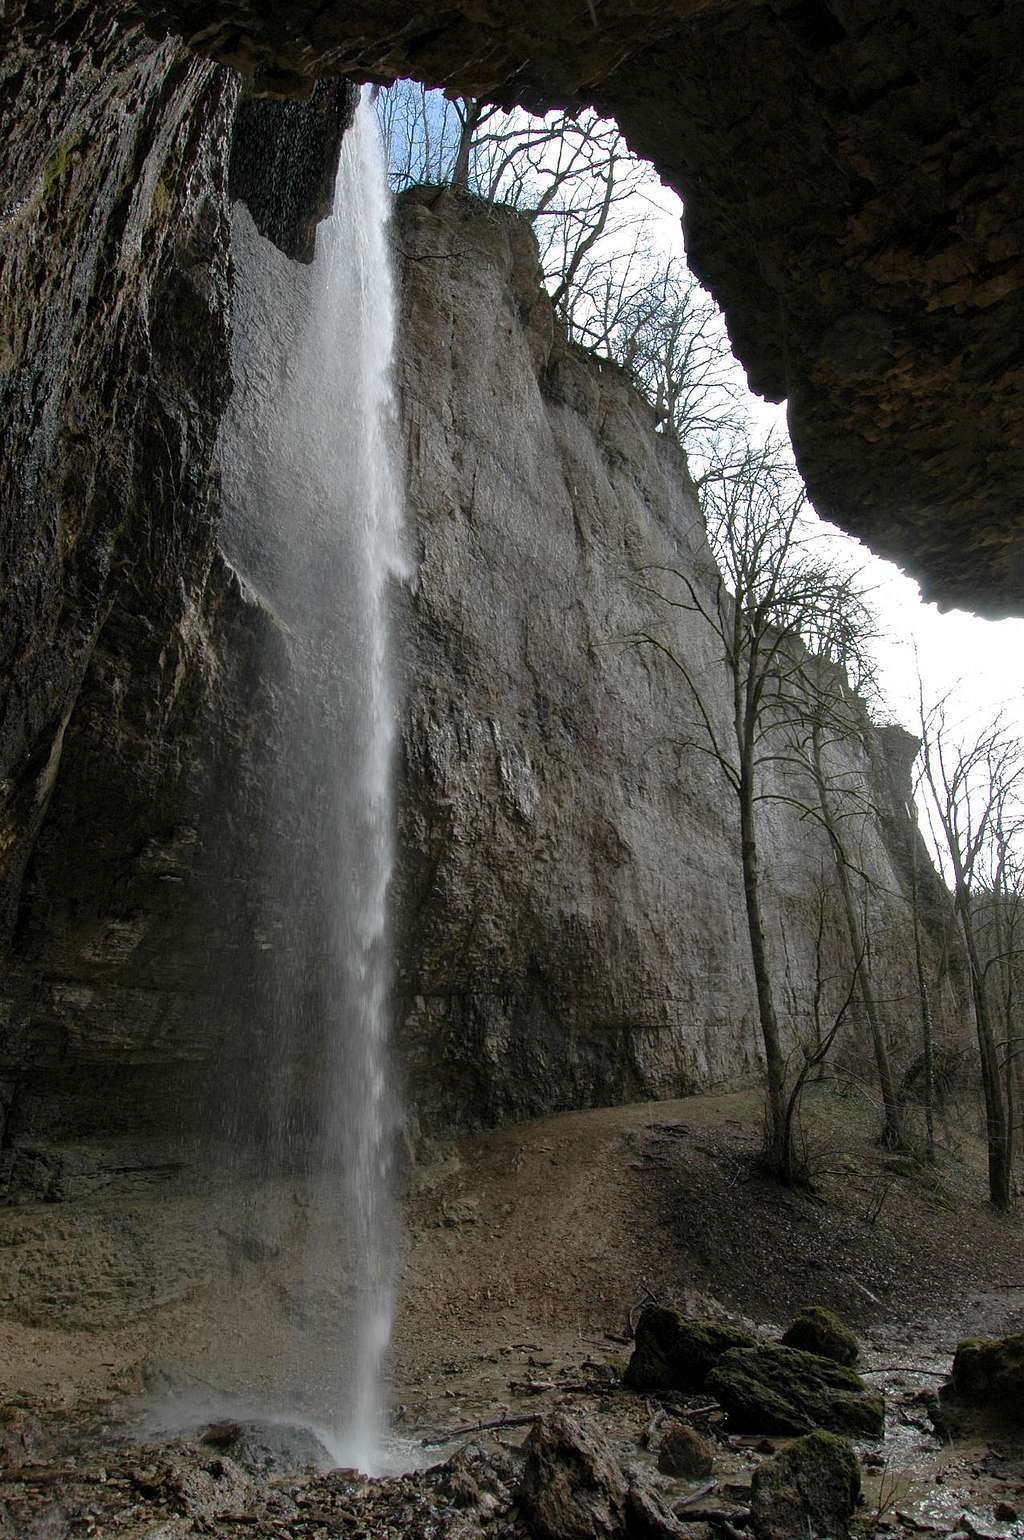 La Cosane waterfall